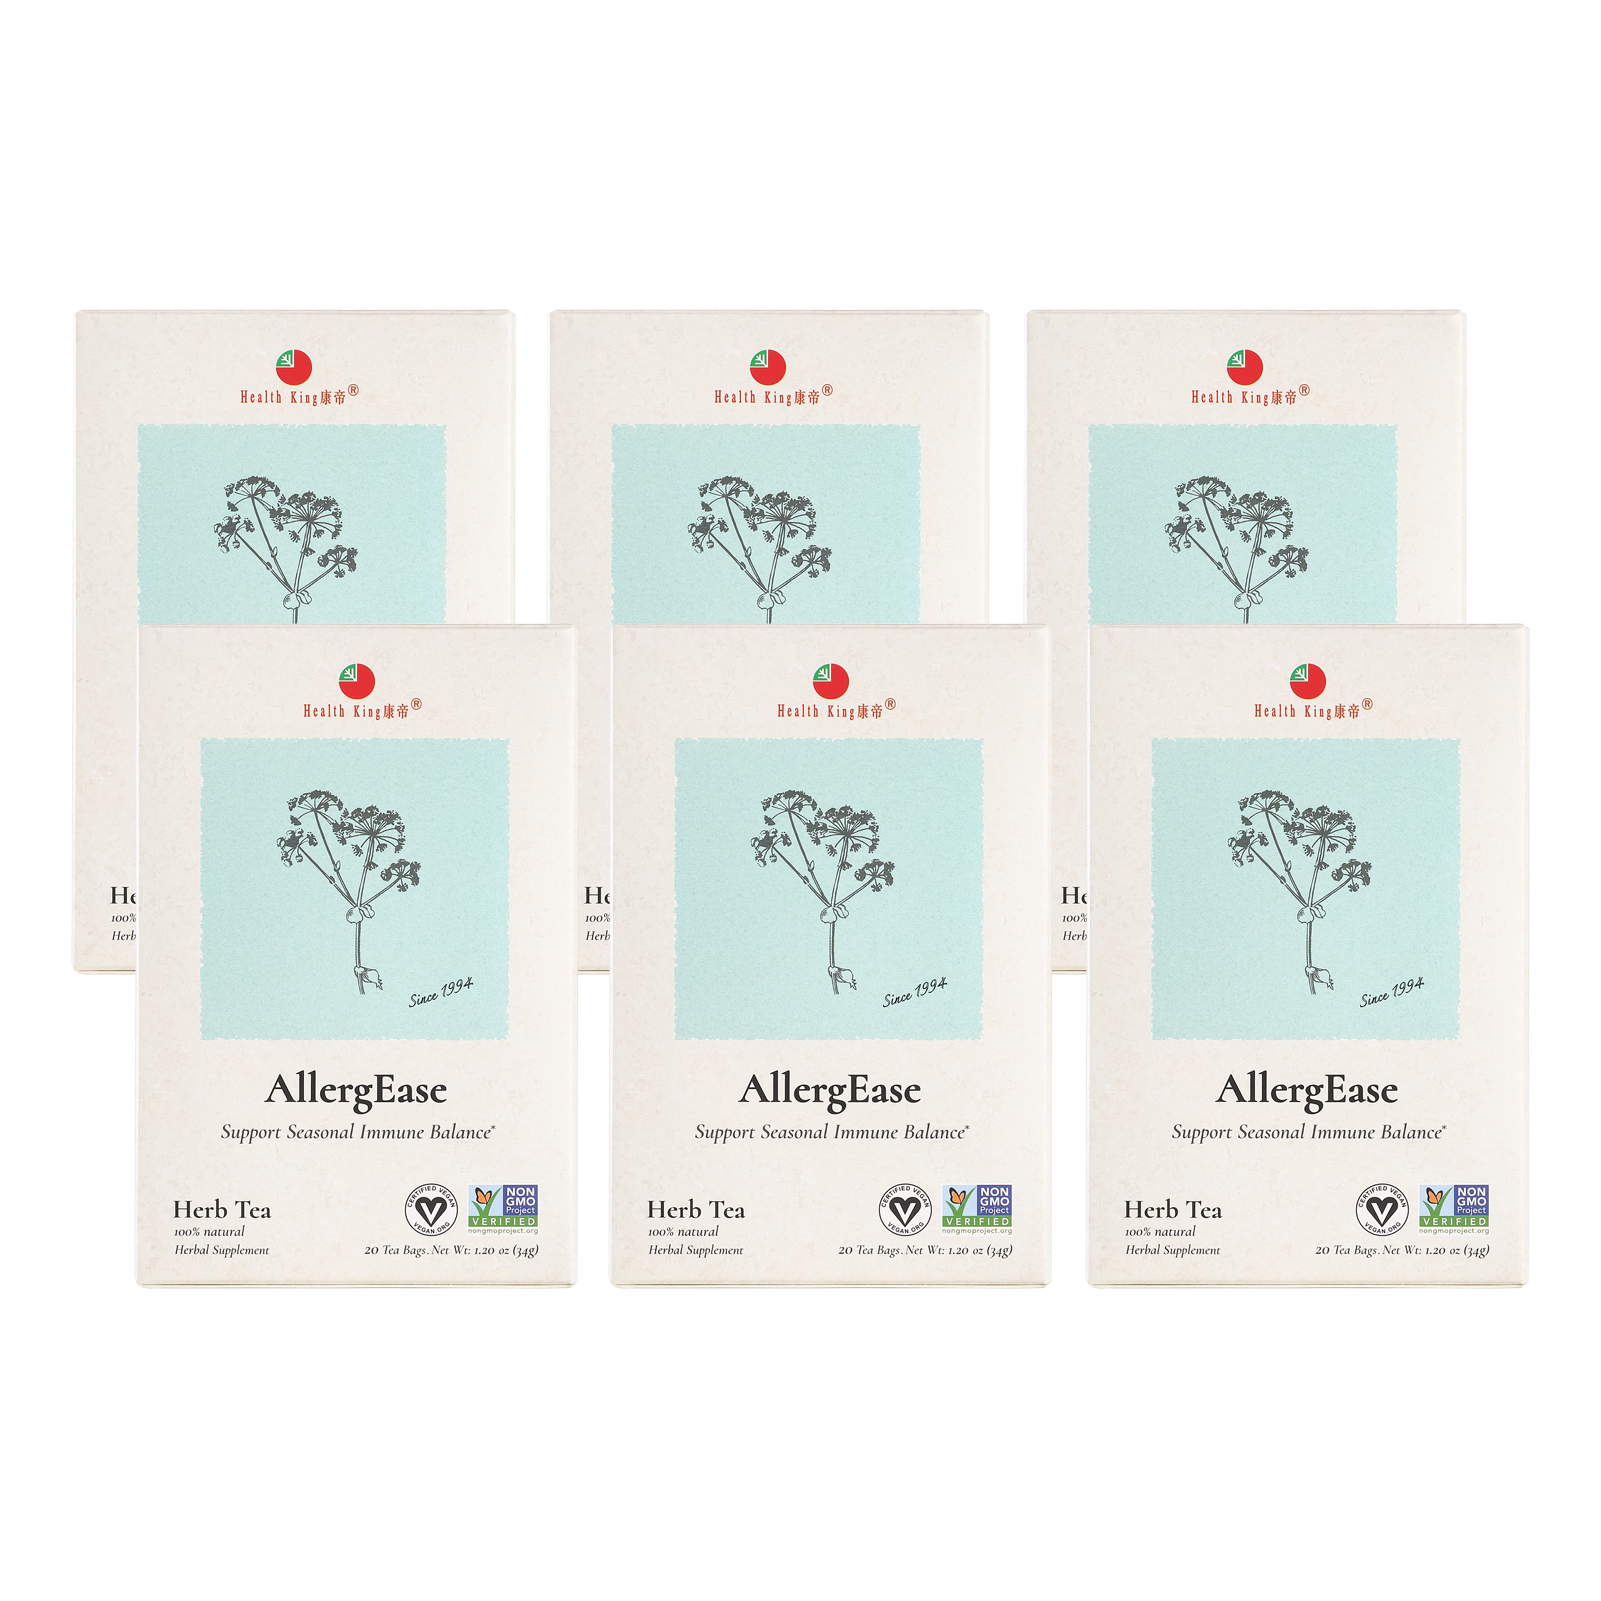 AllergEase Herb Tea with aloe vera ingredient, package of 6